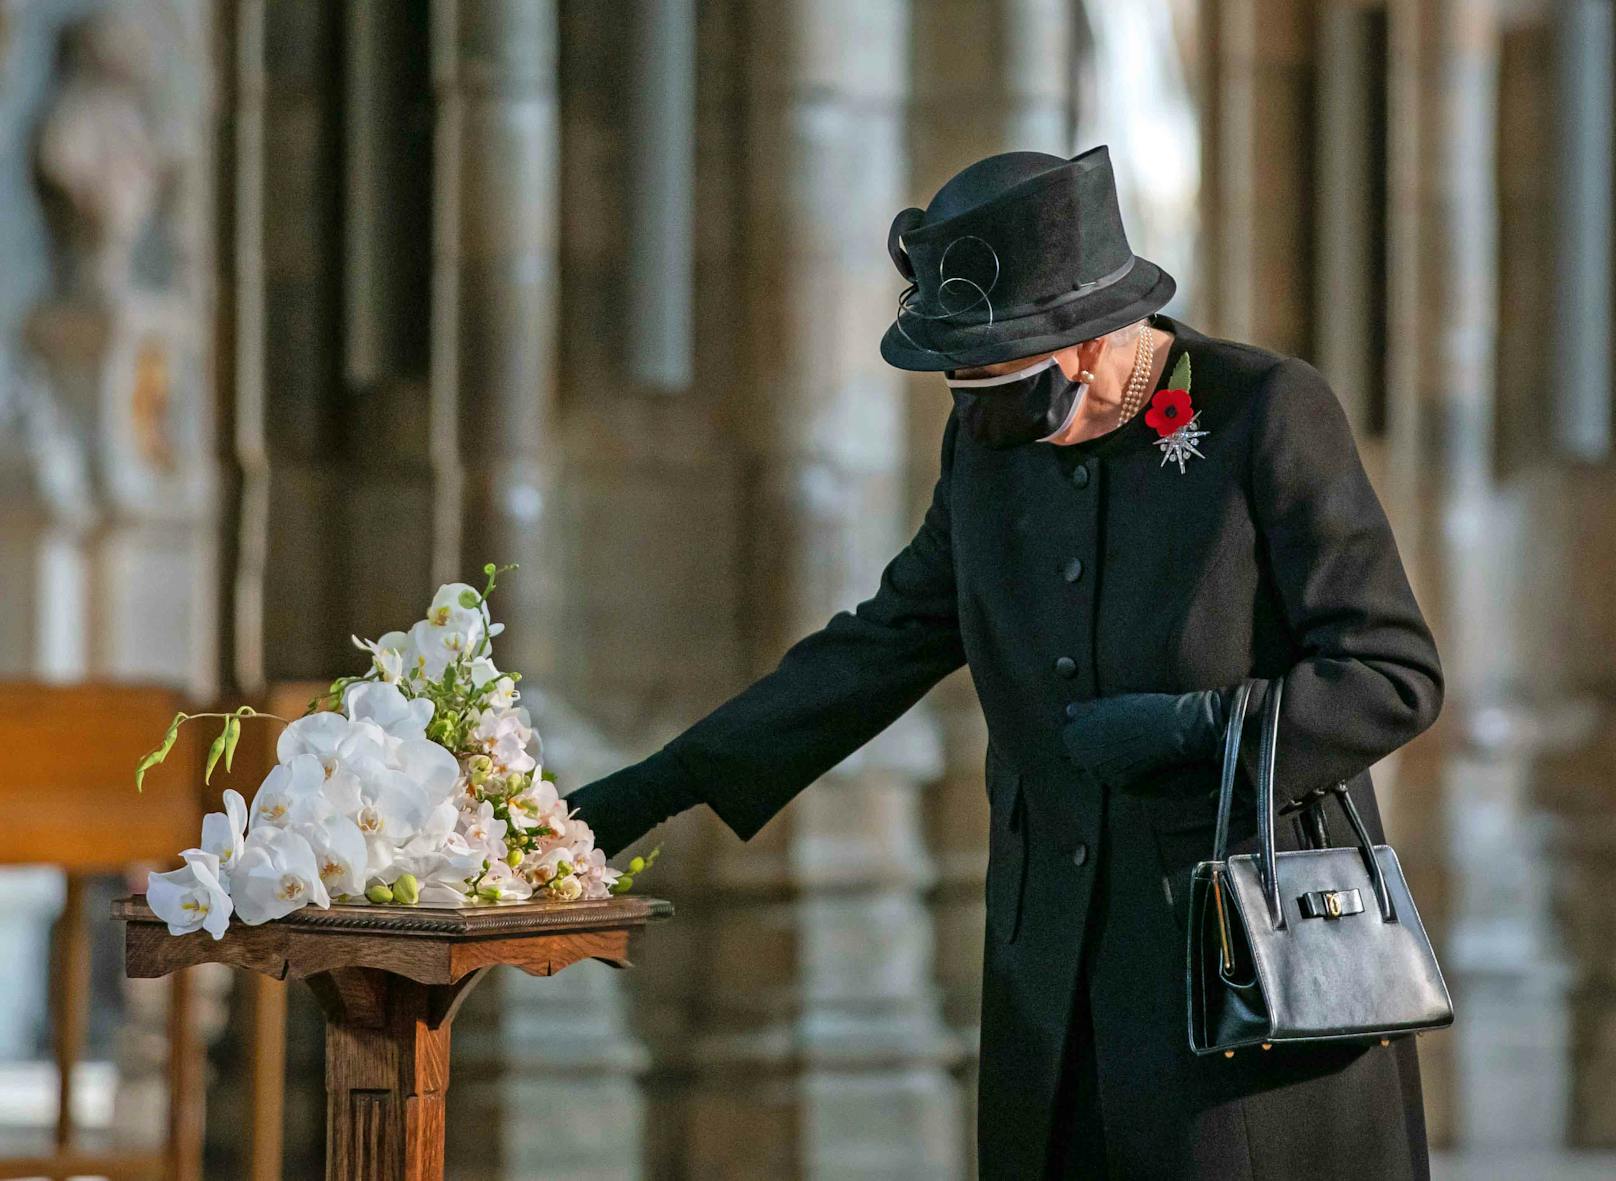 In der Westminster Abbey trat sie an die Gedenkstätte eines unbekannten Soldaten.